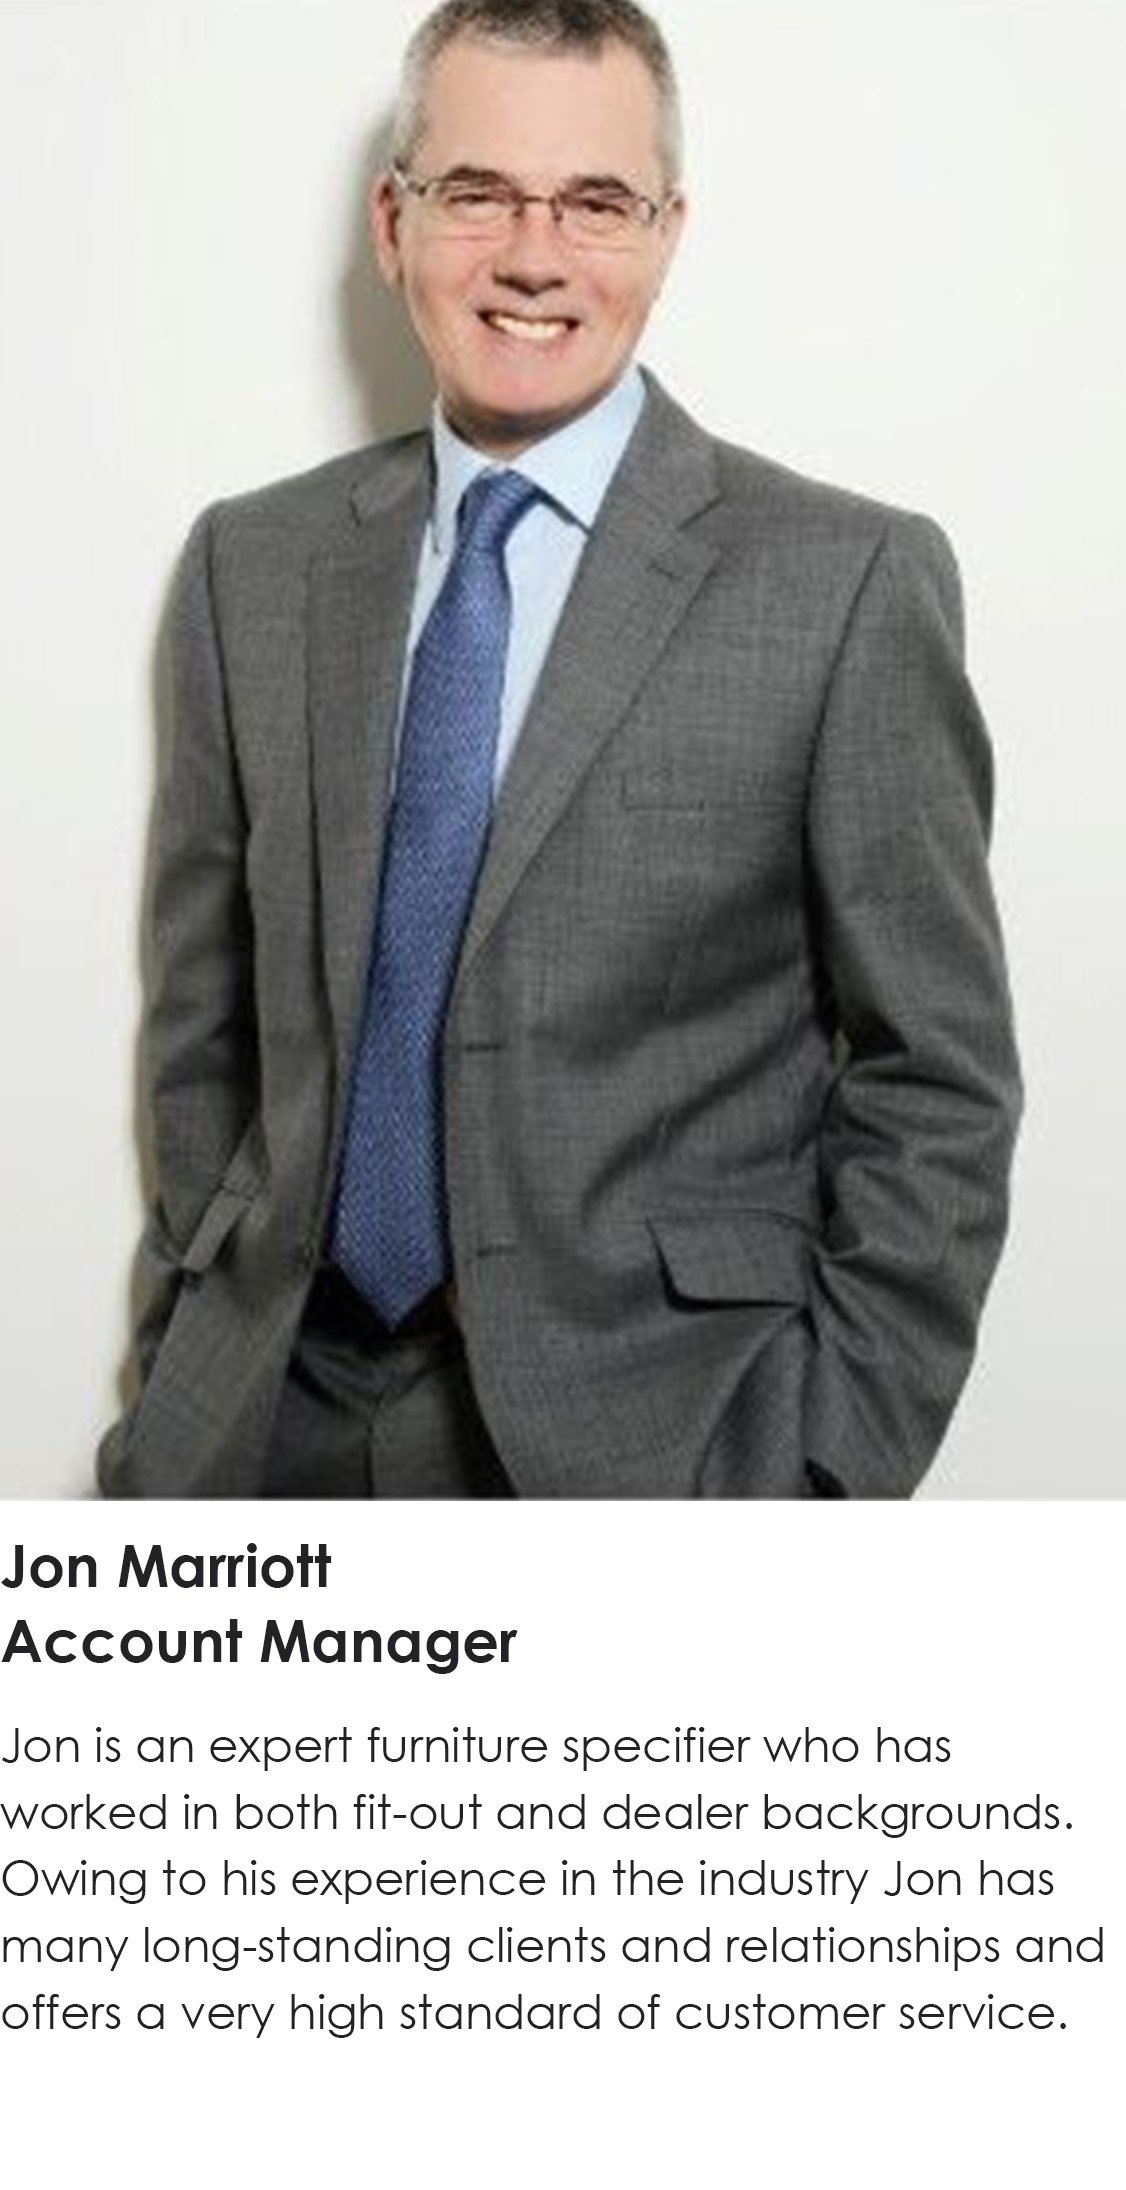 17 Jon Marriott.jpg